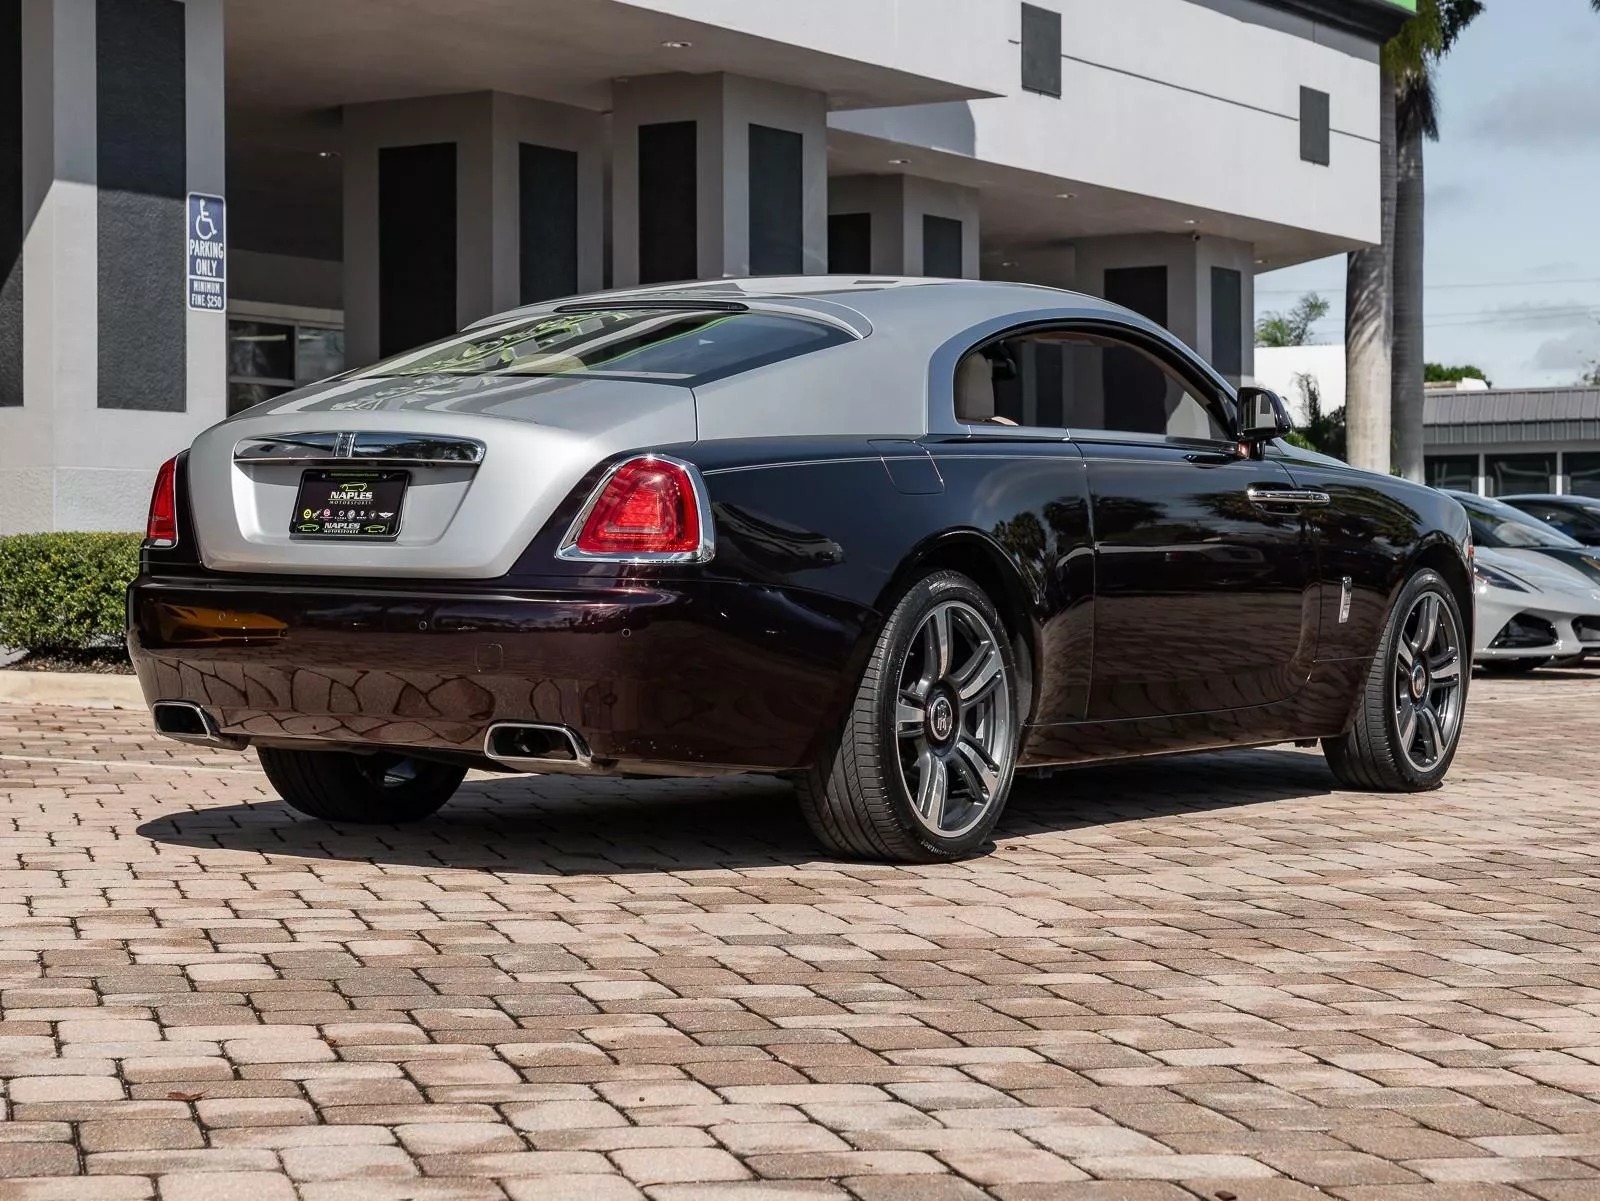 Rao bán Bugatti Chiron giá quy đổi hơn 95 tỷ đồng, chủ xe hứa tặng kèm Rolls-Royce Wraith hợp tông màu- Ảnh 8.